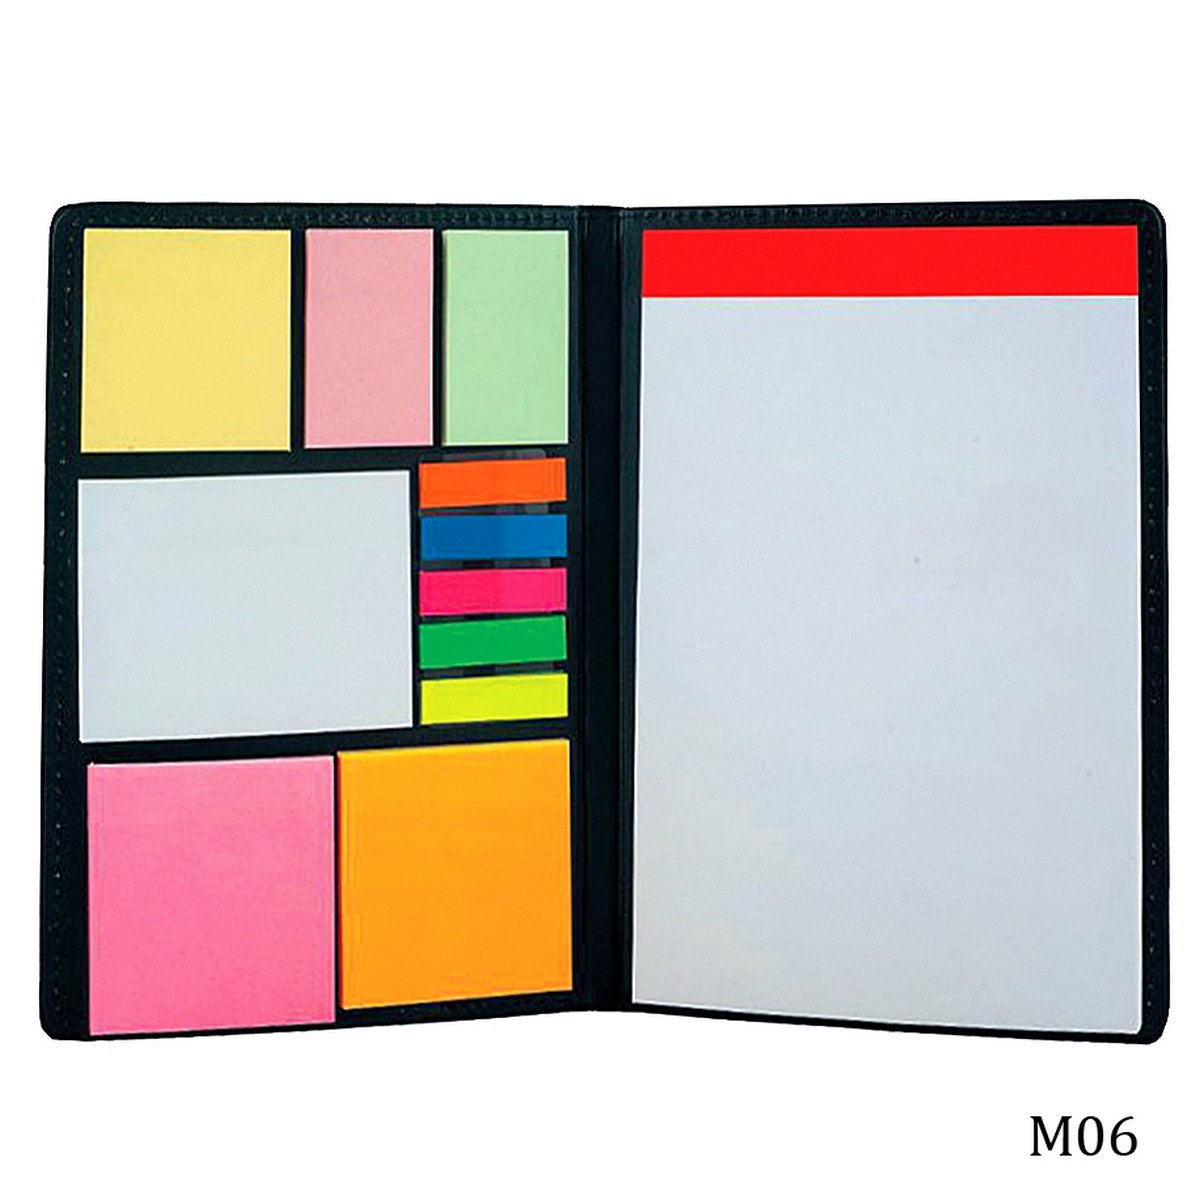 jags-mumbai Sticky Notes Foam Folder With Sticky Note Pad M06